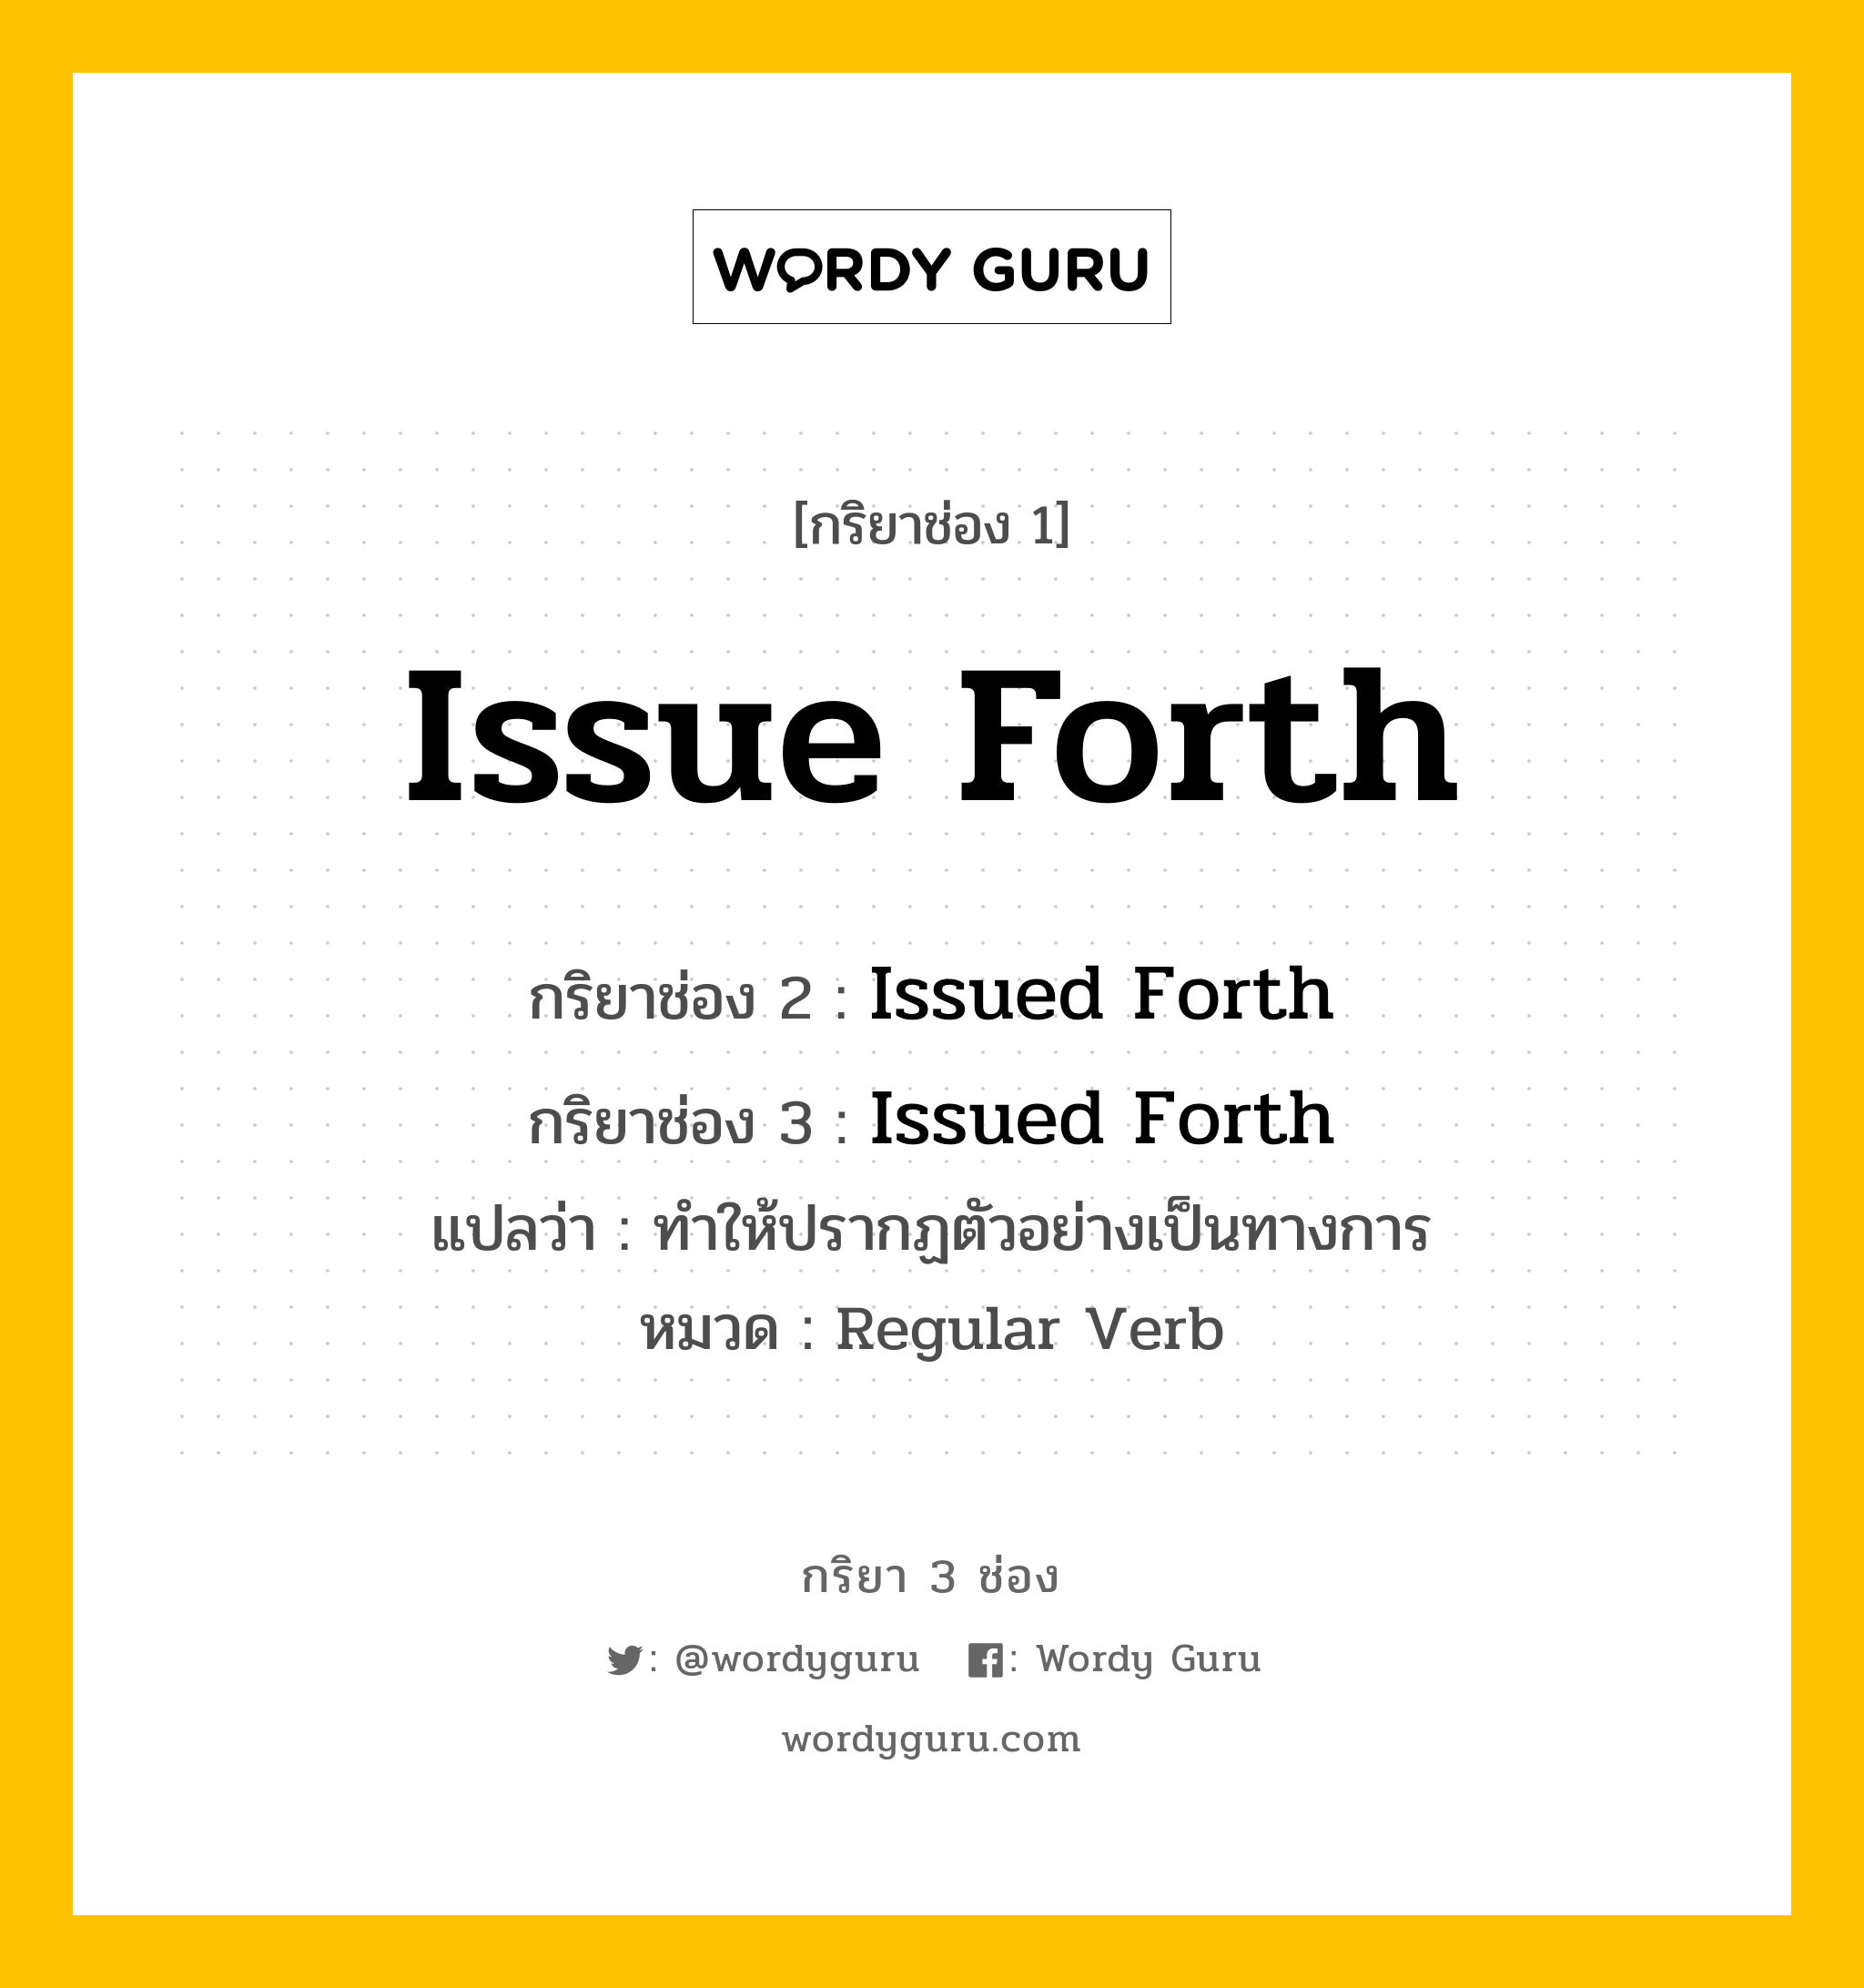 กริยา 3 ช่อง ของ Issue Forth คืออะไร?, กริยาช่อง 1 Issue Forth กริยาช่อง 2 Issued Forth กริยาช่อง 3 Issued Forth แปลว่า ทำให้ปรากฏตัวอย่างเป็นทางการ หมวด Regular Verb หมวด Regular Verb